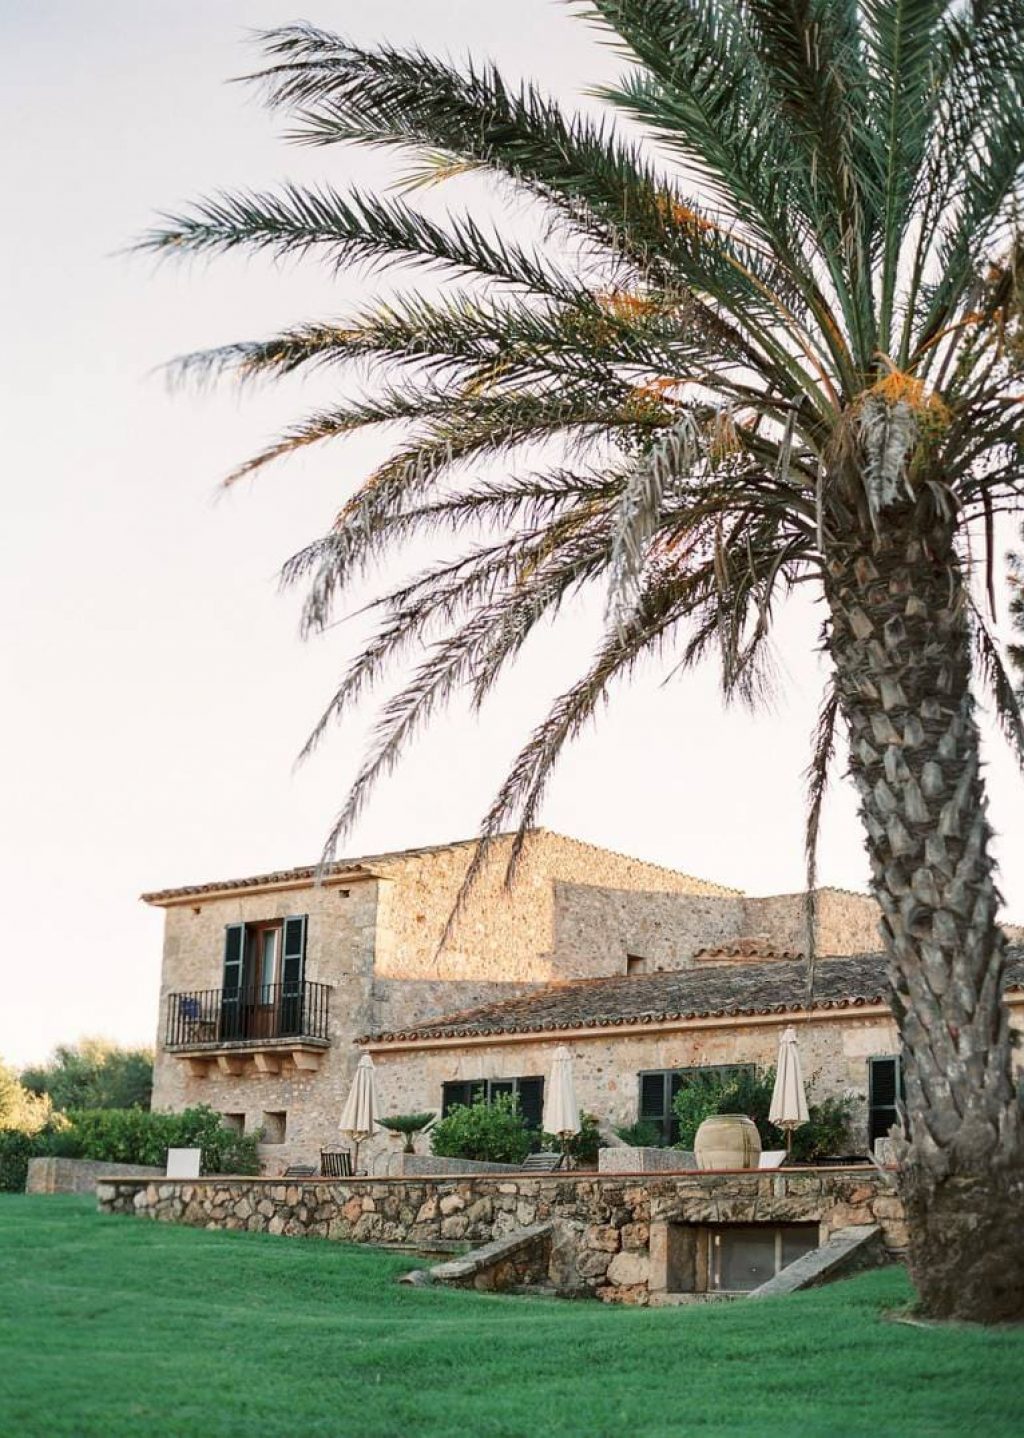 Hotel Casal Santa Eulalia para bodas románticas y eventos elegantes en Can Picafort, Mallorca, España